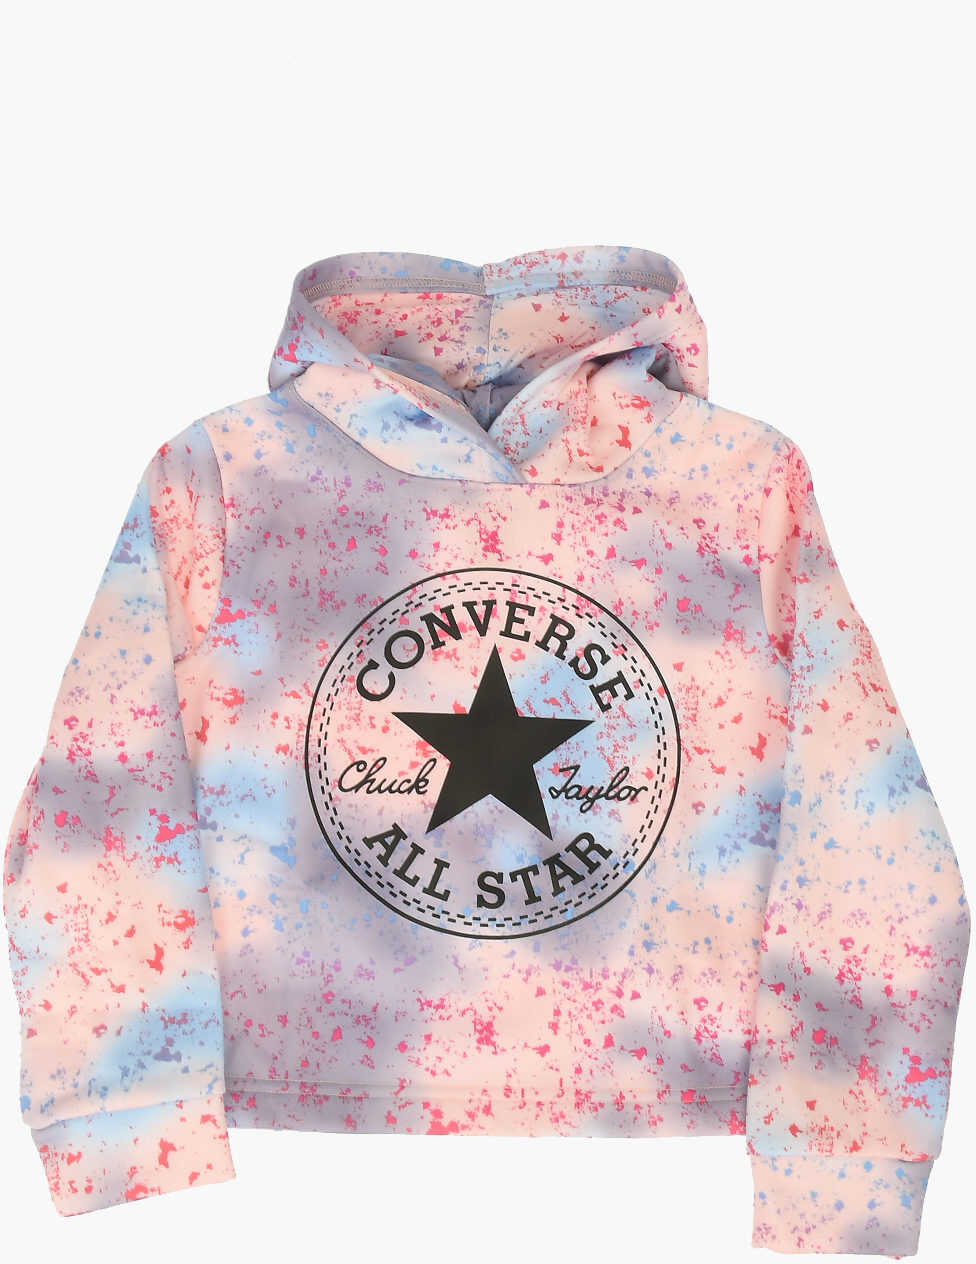 Converse All Star Printed Sweatshirt Multicolor